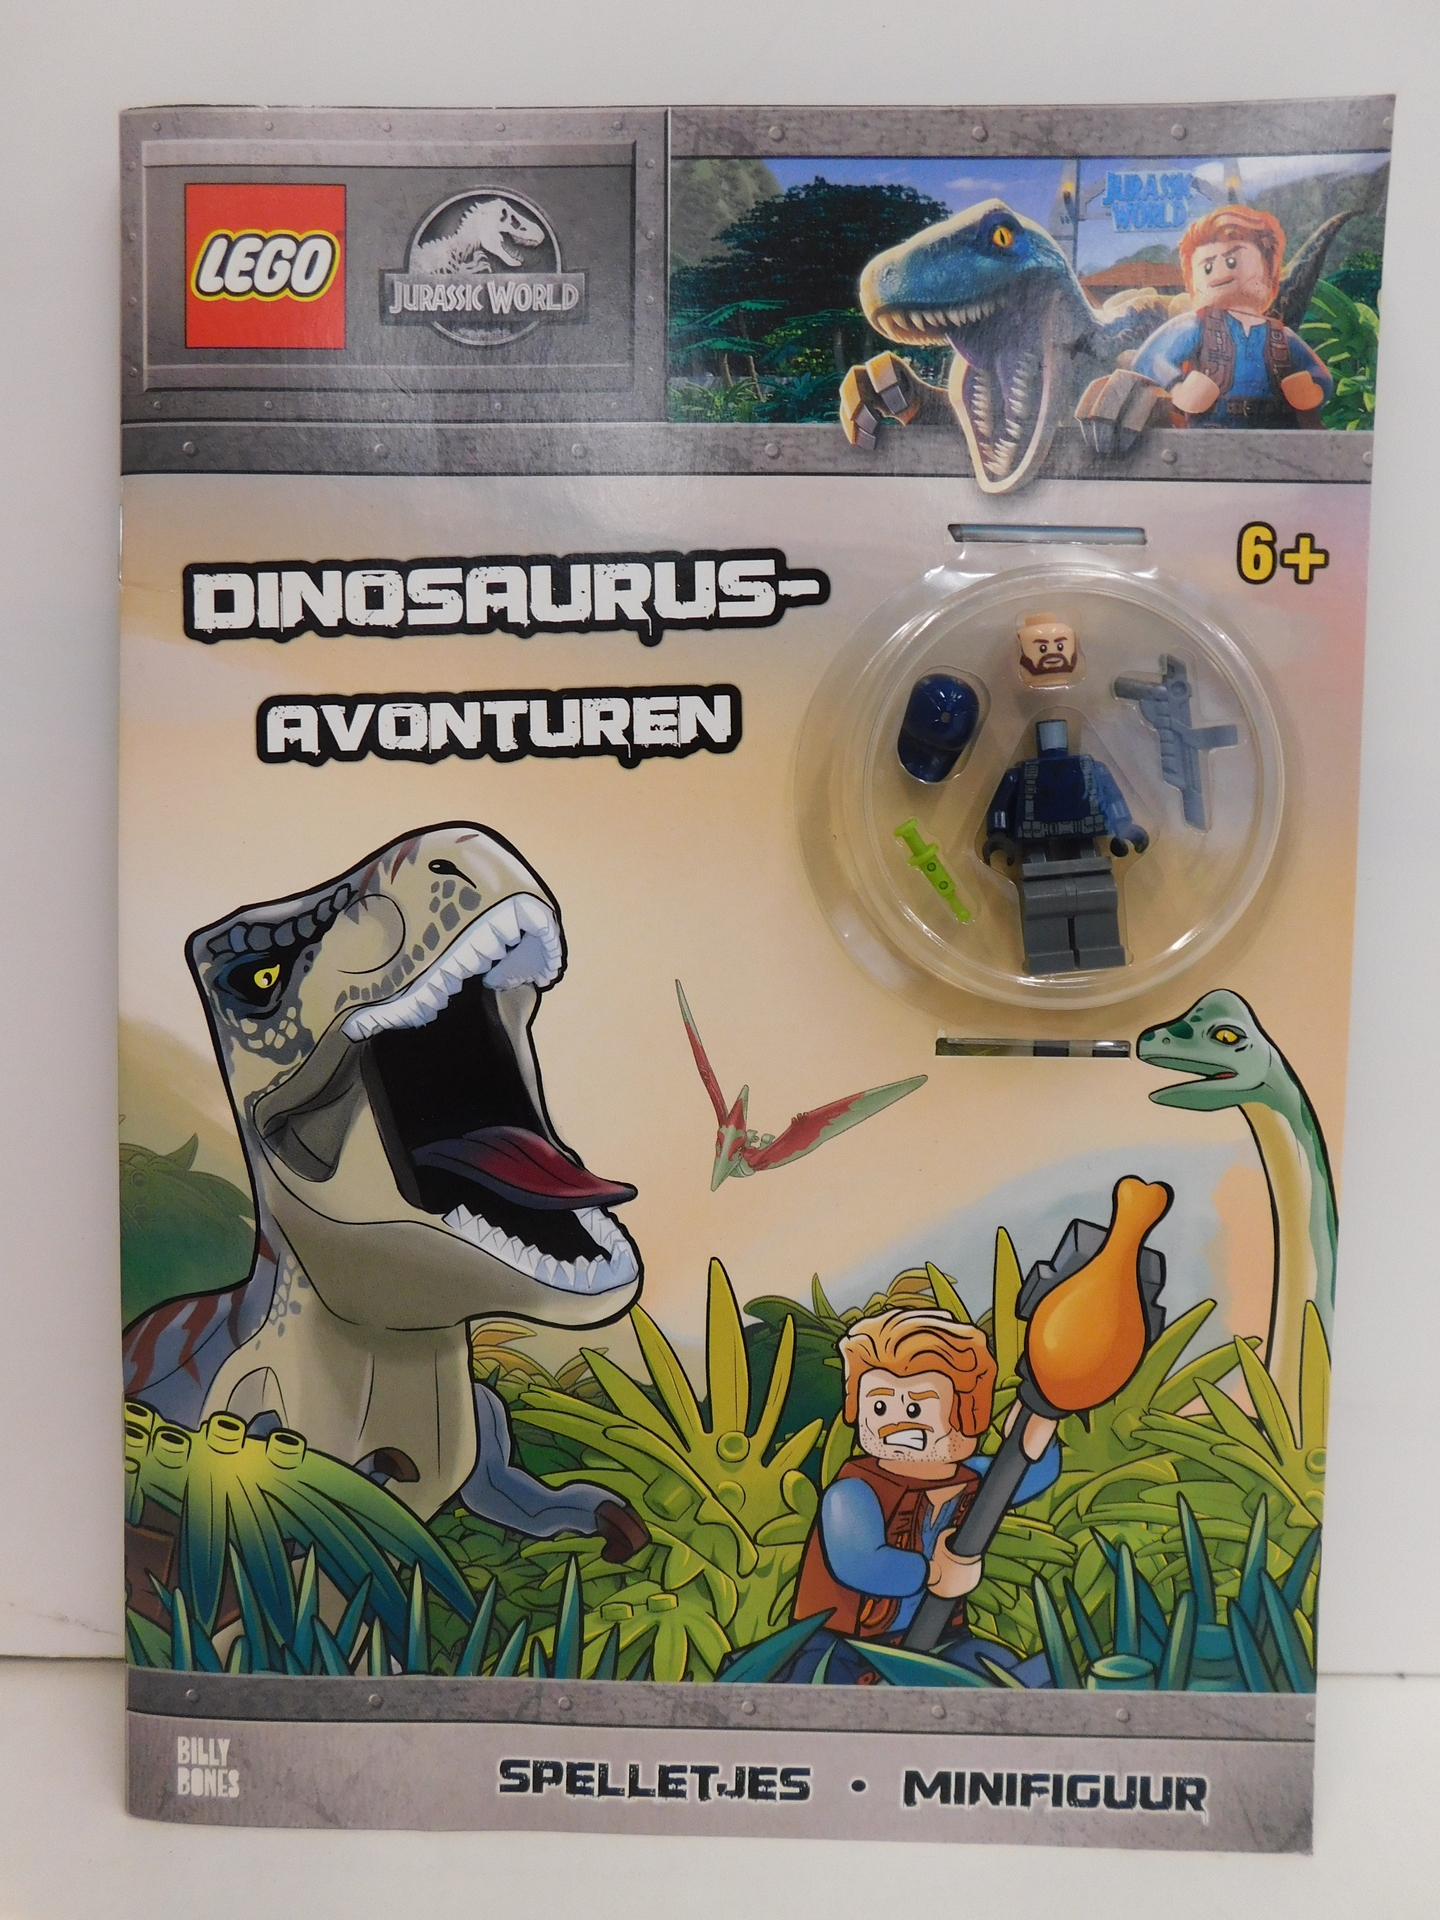 Memoriseren erectie moordenaar 06678 LEGO Boek Jurassic World Dinosaurus-avonturen spelletjes met  minifiguur 6+ - ALMAspeelgoed.nl